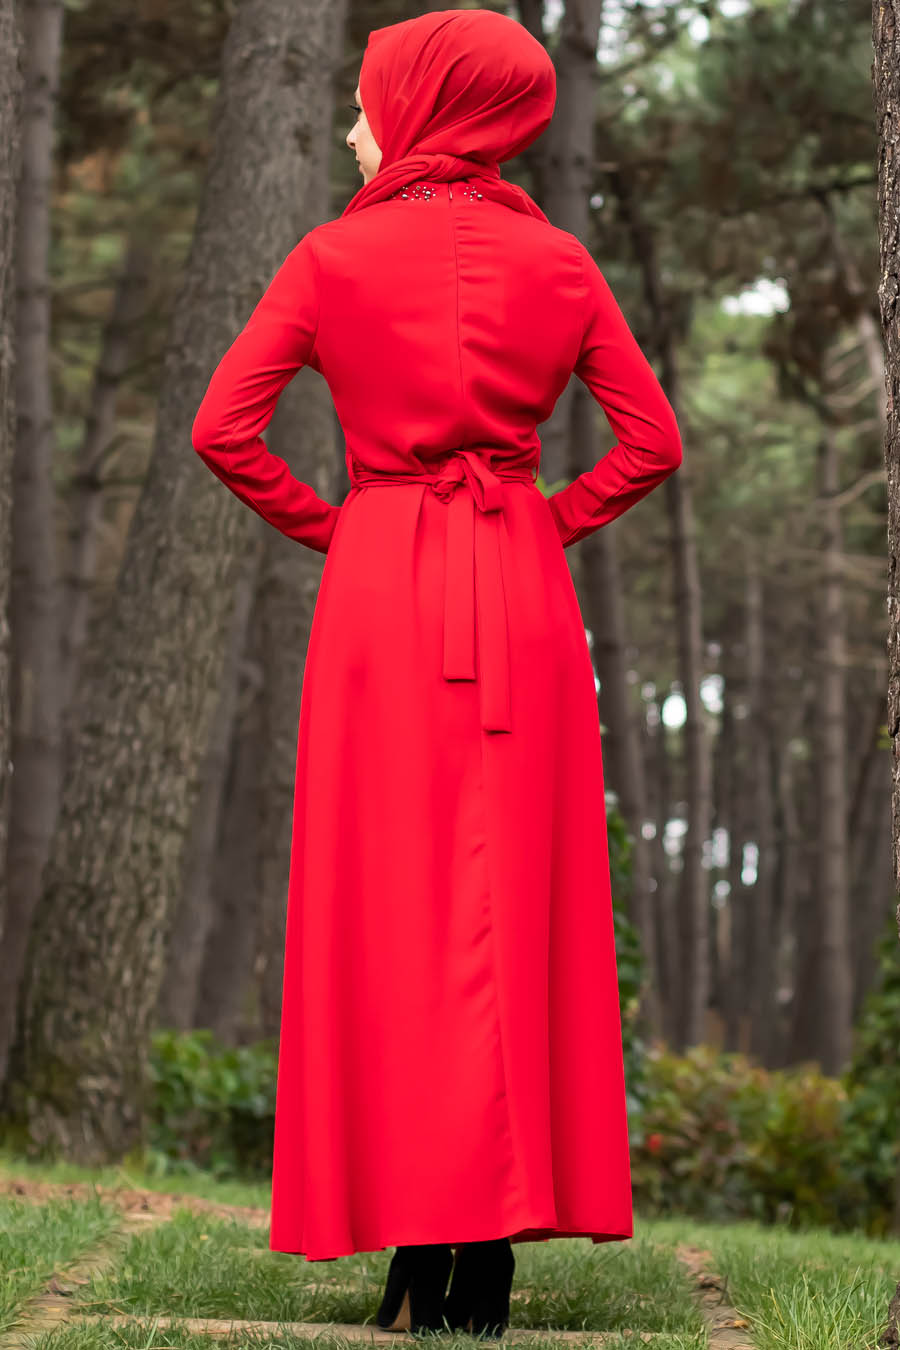 Taşlı Tesettür Abiye Elbise - Kırmızı